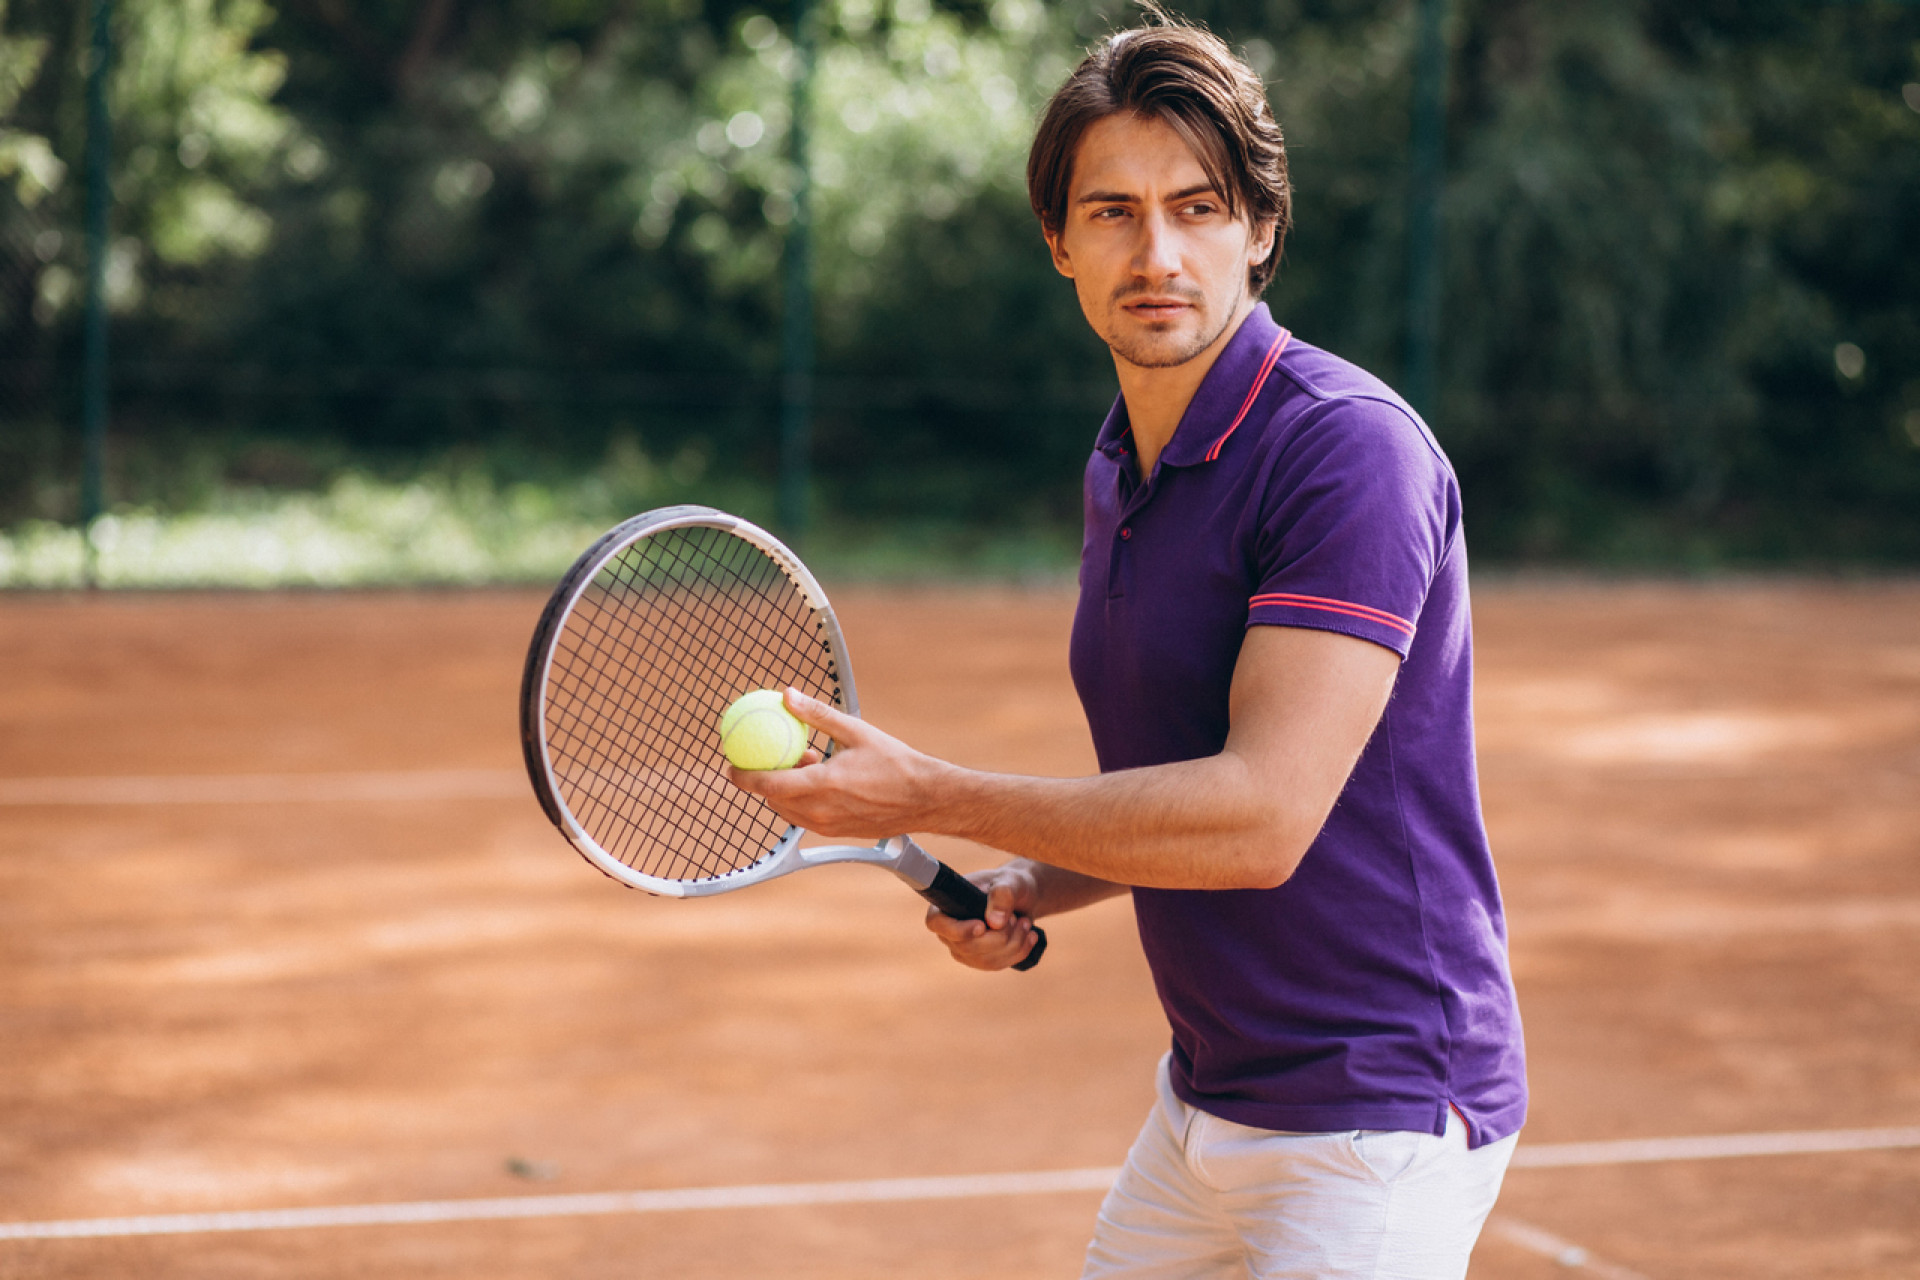 Zasady gry w tenisa ziemnego. Co musisz wiedzieć, aby zacząć grać?